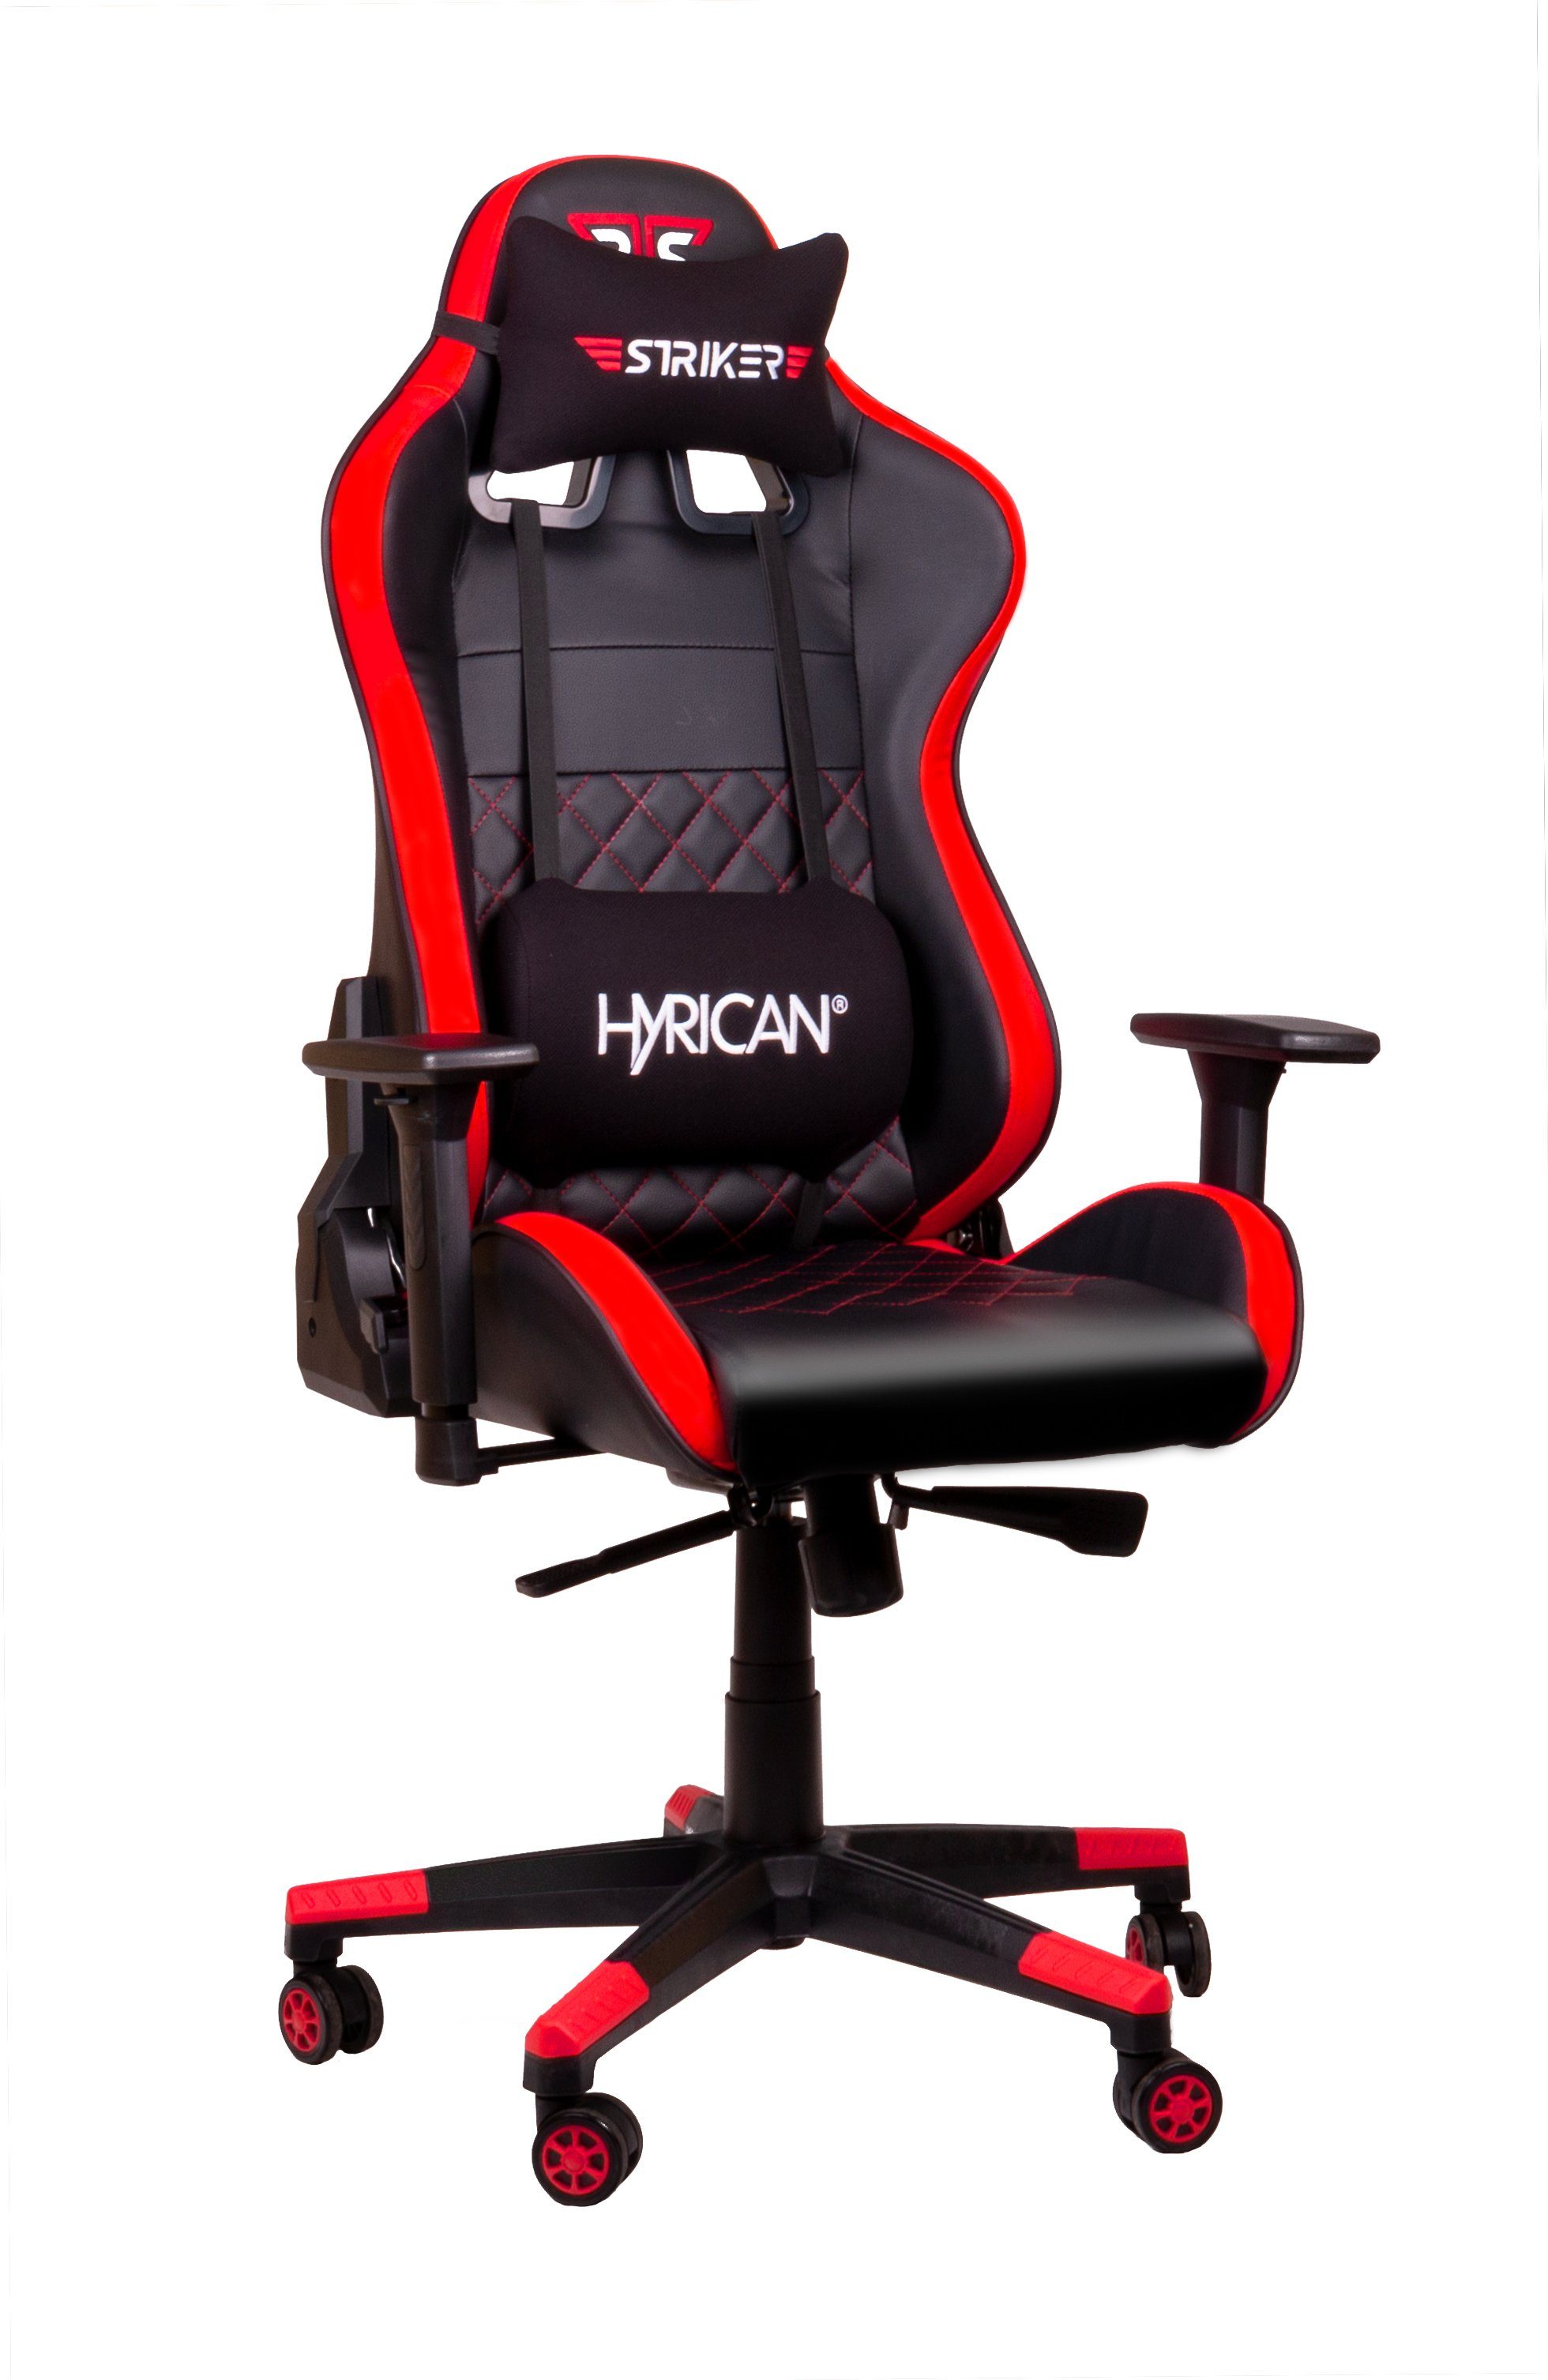 Hyrican Gaming-Stuhl "Striker Code Red XL" ergonomischer Gamingstuhl,Schreibtischstuhl | Stühle